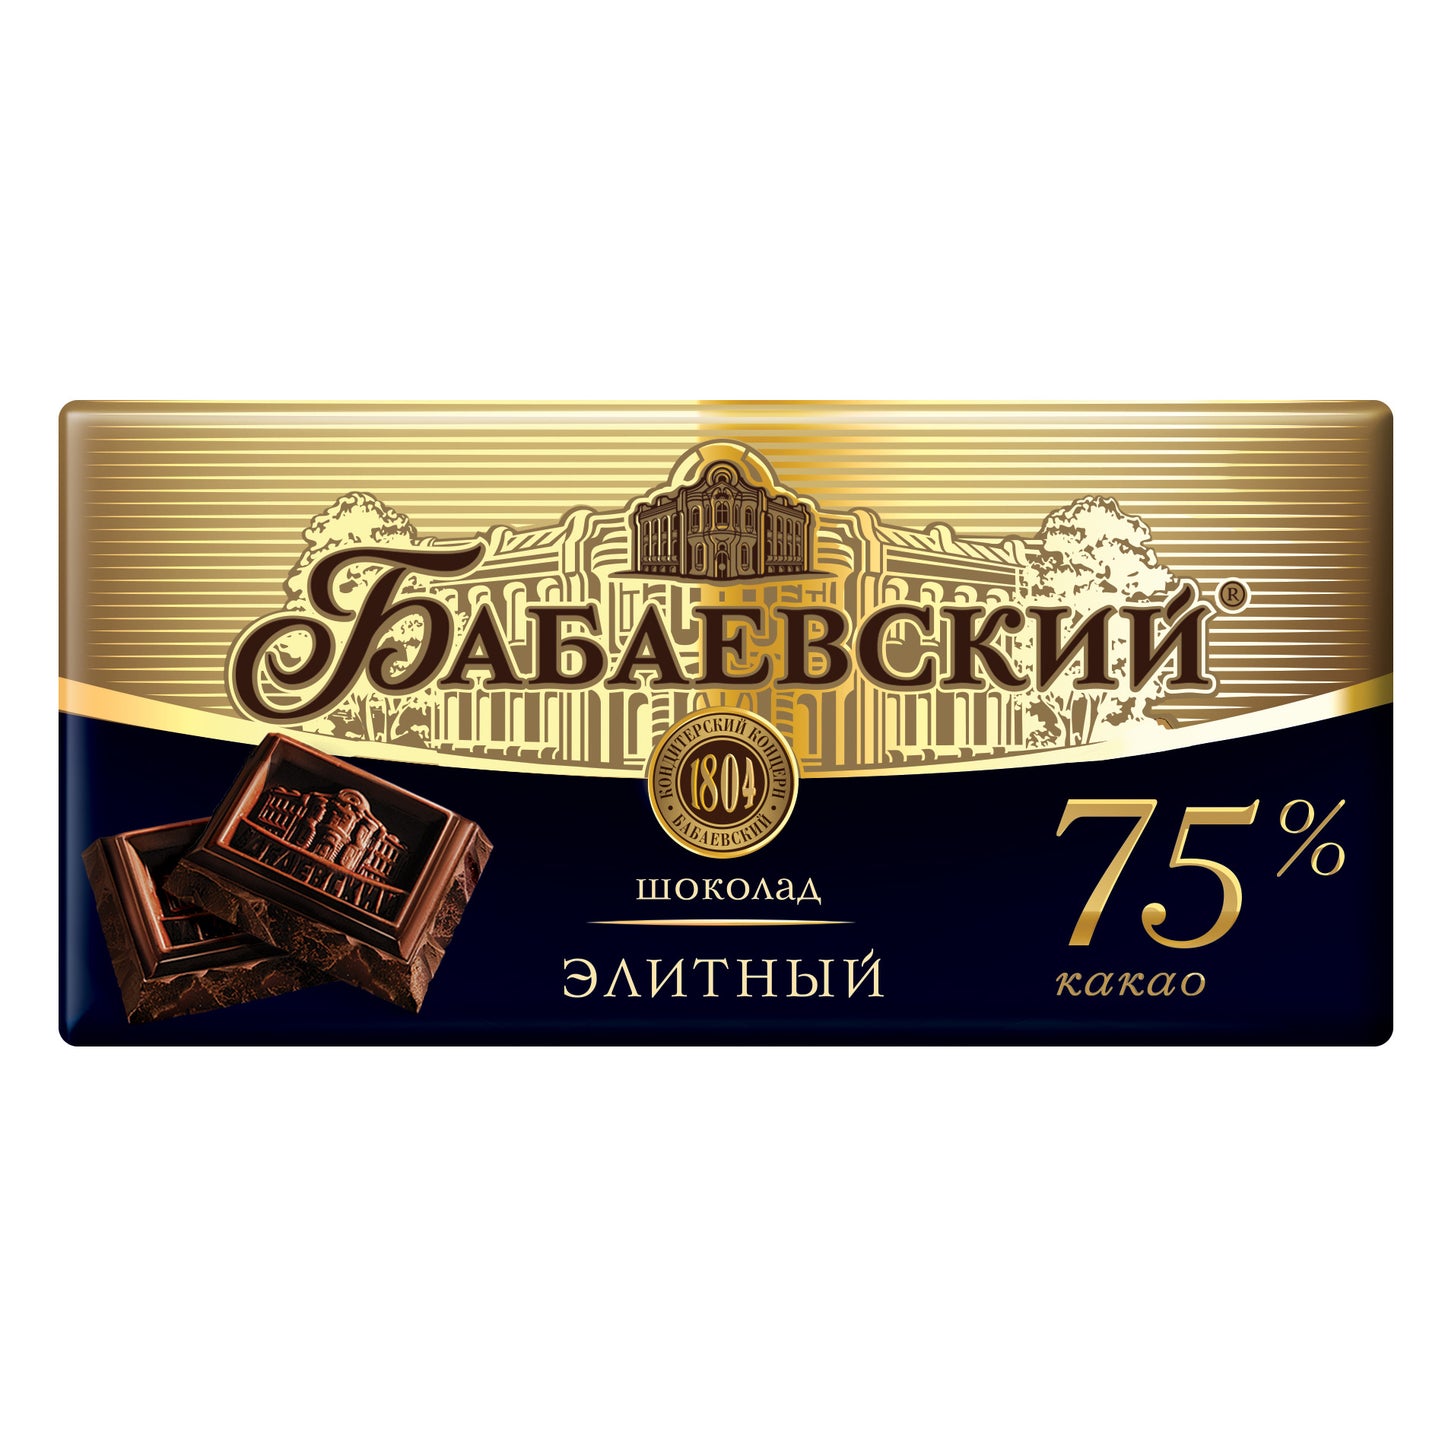 BABAEVSKY Chocolate Elite 75% Cocoa, 90g